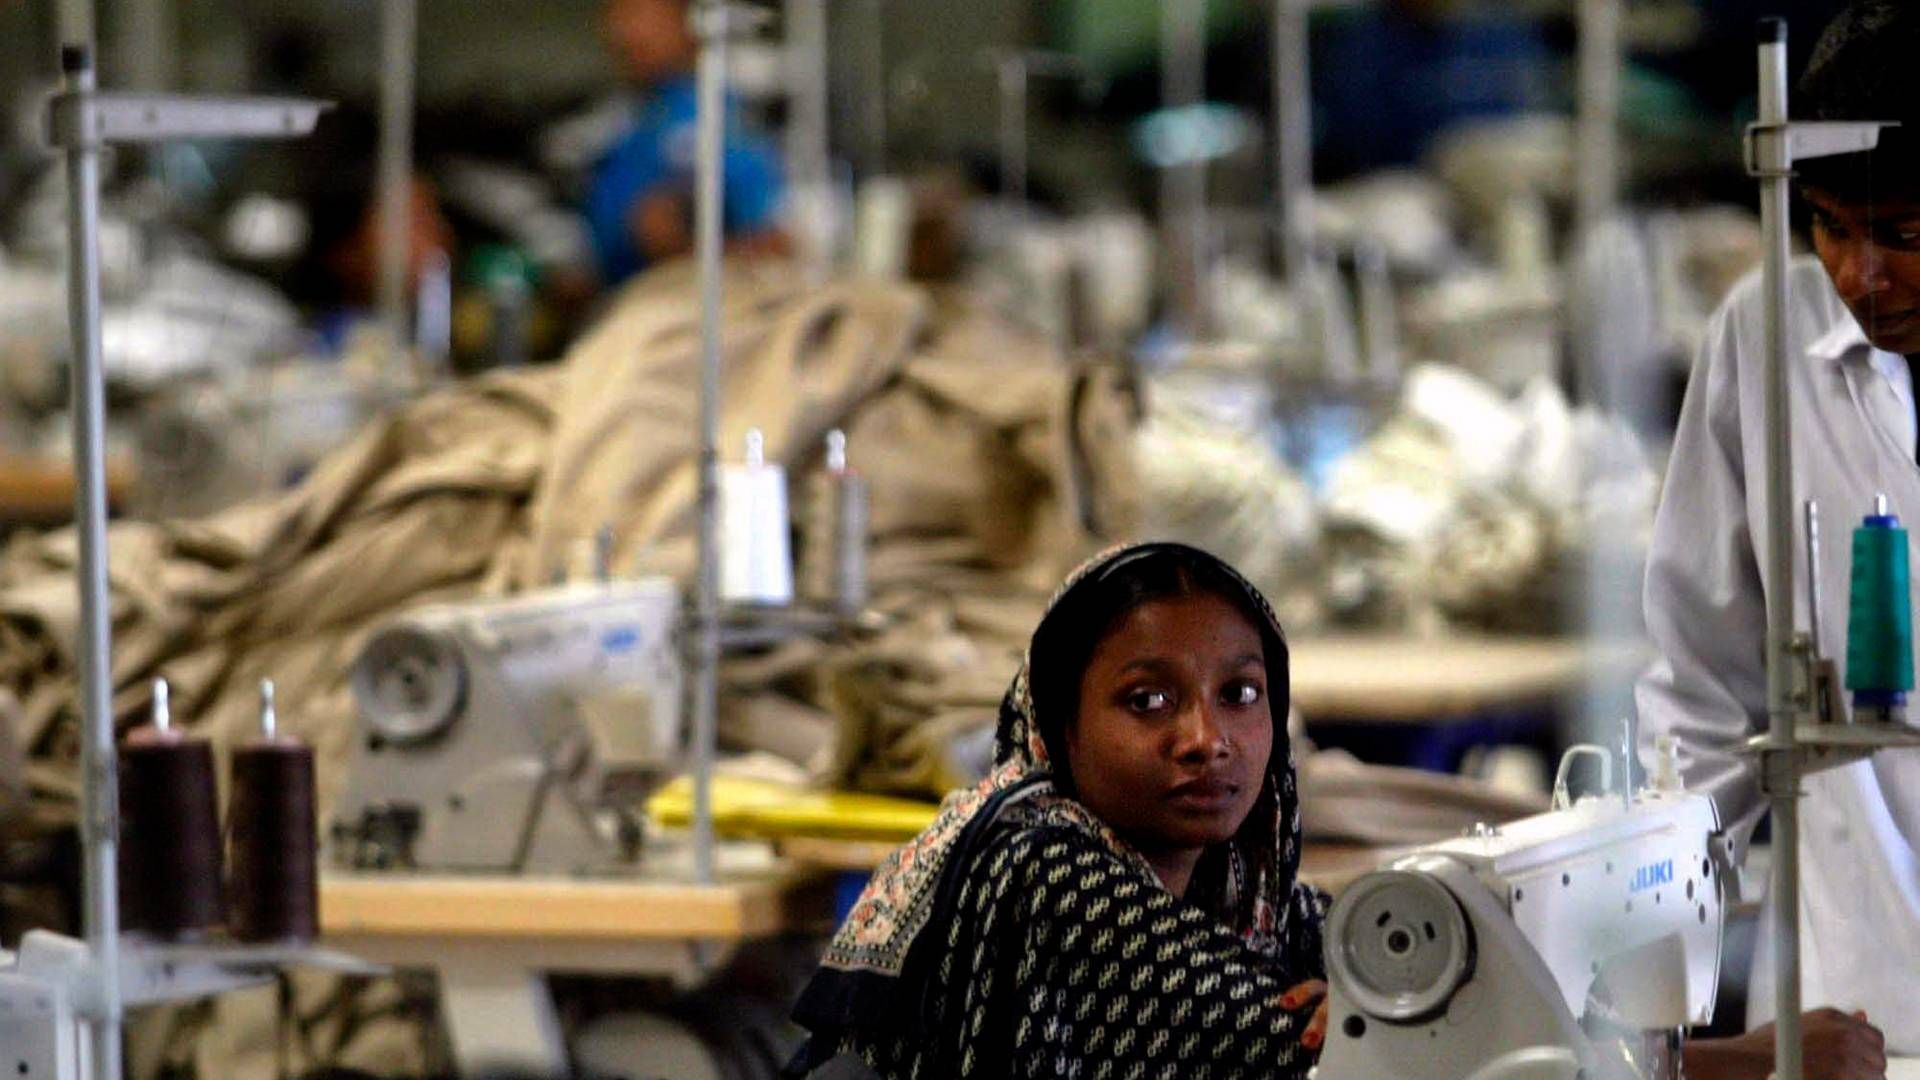 Bangladesh har udviklet sig til at være et af de vigtigste lande for tøjindustrien, blandt andet fordi landet har en lav løn. | Foto: Manish Swarup/AP/Ritzau Scanpix